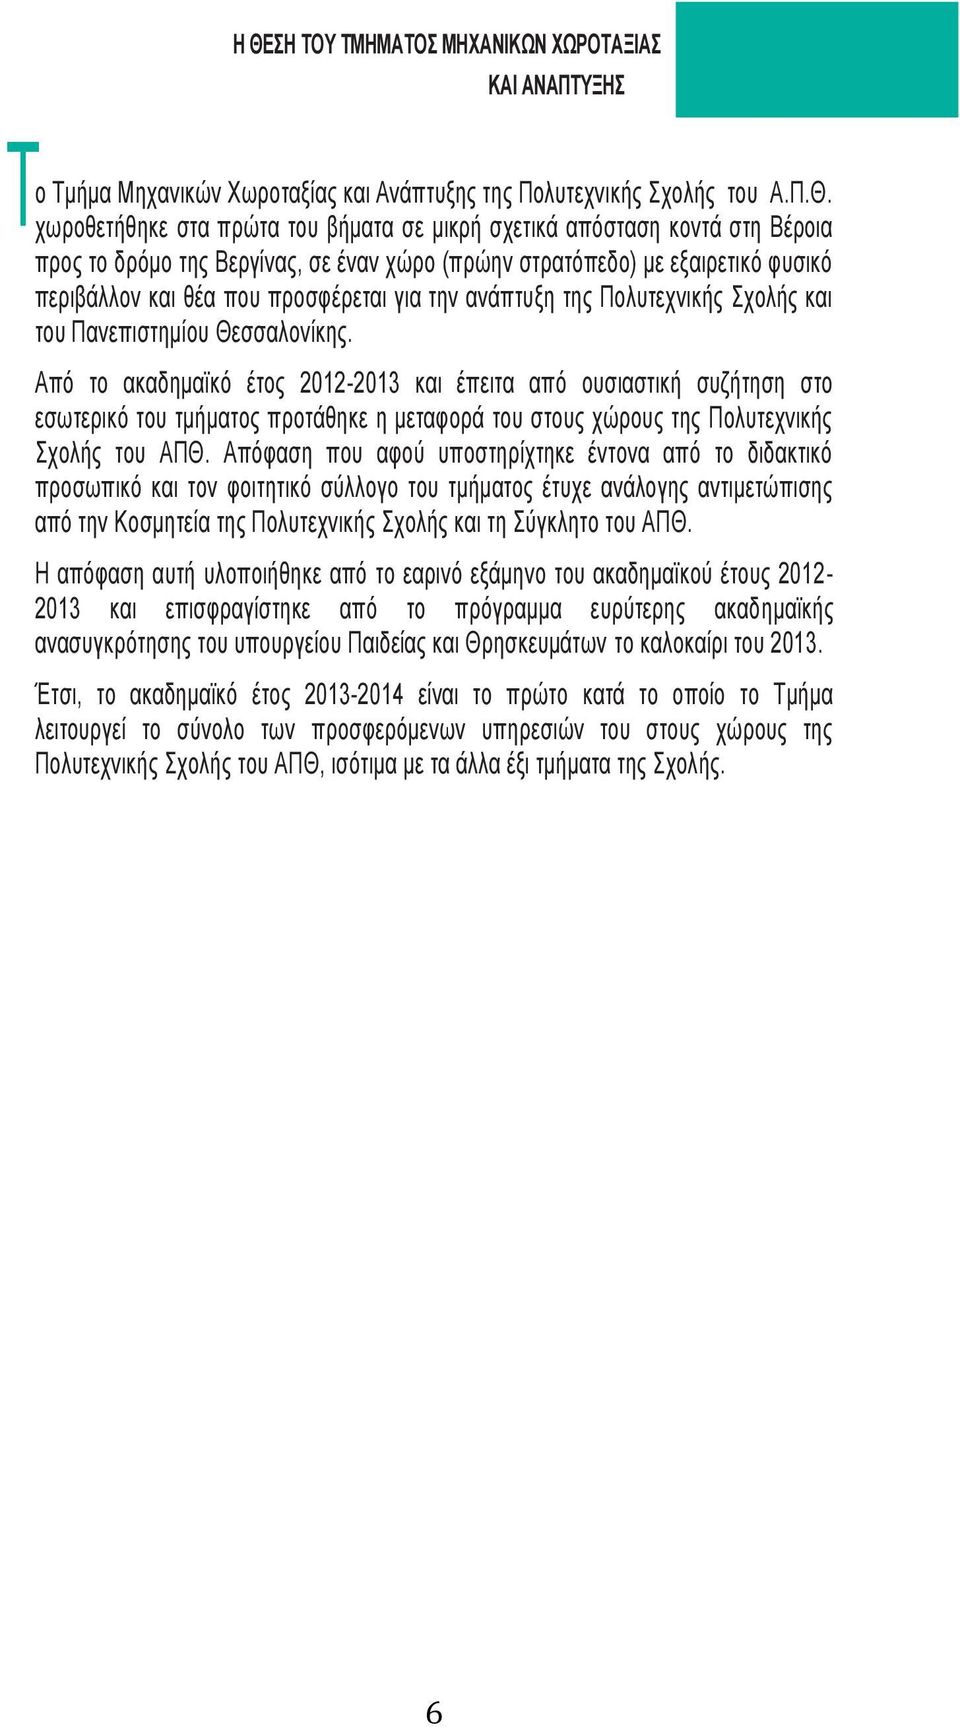 Θεσσαλονίκης. Από το ακαδημαϊκό έτος 2012-2013 και έπειτα από ουσιαστική συζήτηση στο εσωτερικό του τμήματος προτάθηκε η μεταφορά του στους χώρους της Πολυτεχνικής Σχολής του ΑΠΘ.